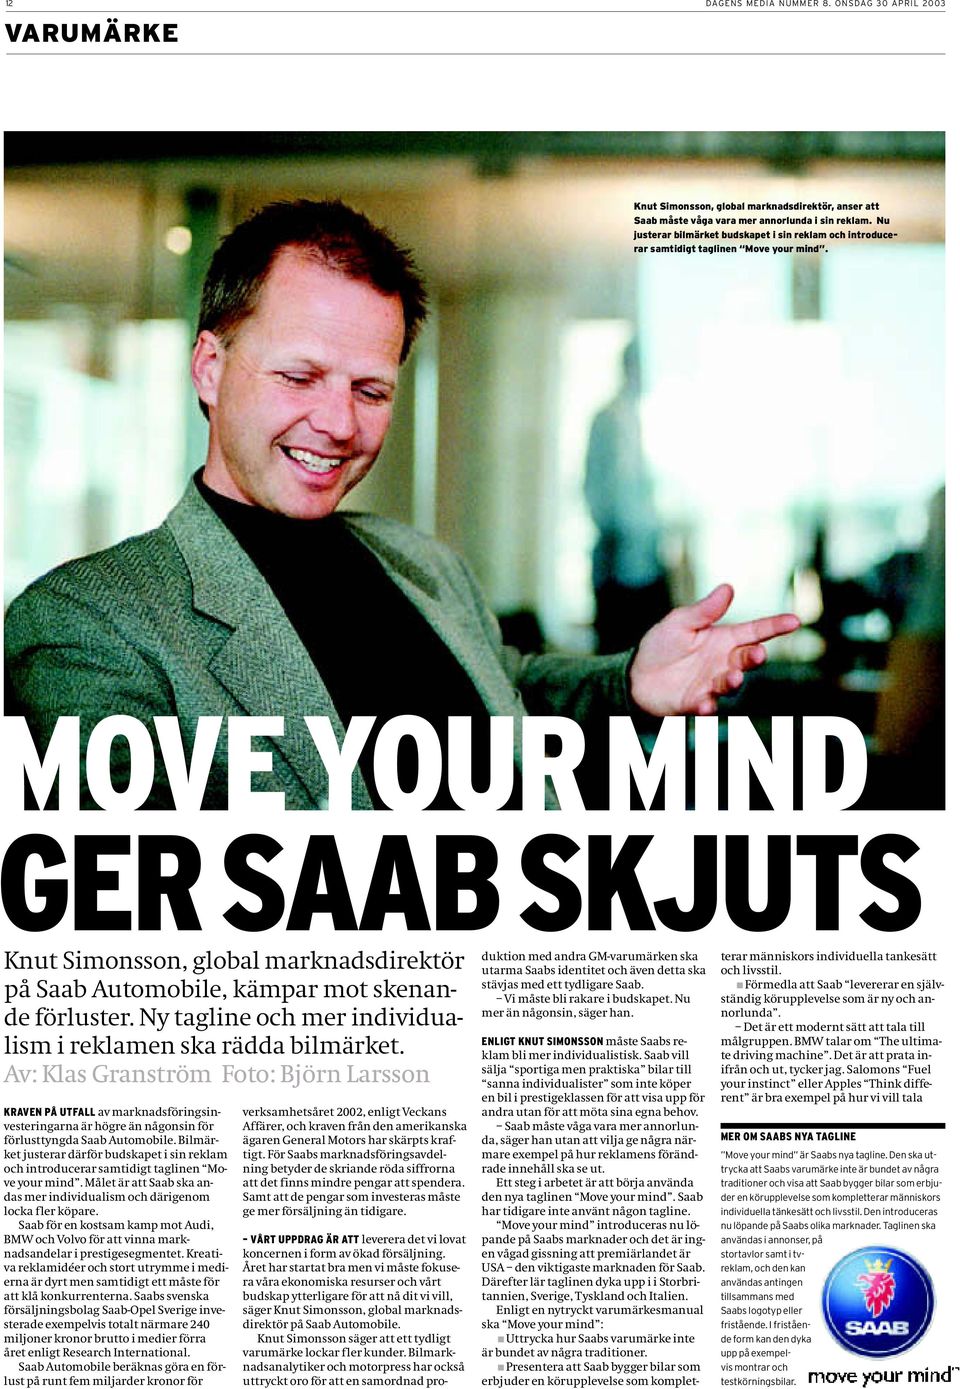 MOVE YOUR MIND GER SAAB SKJUTS Knut Simonsson, global marknadsdirektör på Saab Automobile, kämpar mot skenande förluster. Ny tagline och mer individualism i reklamen ska rädda bilmärket.